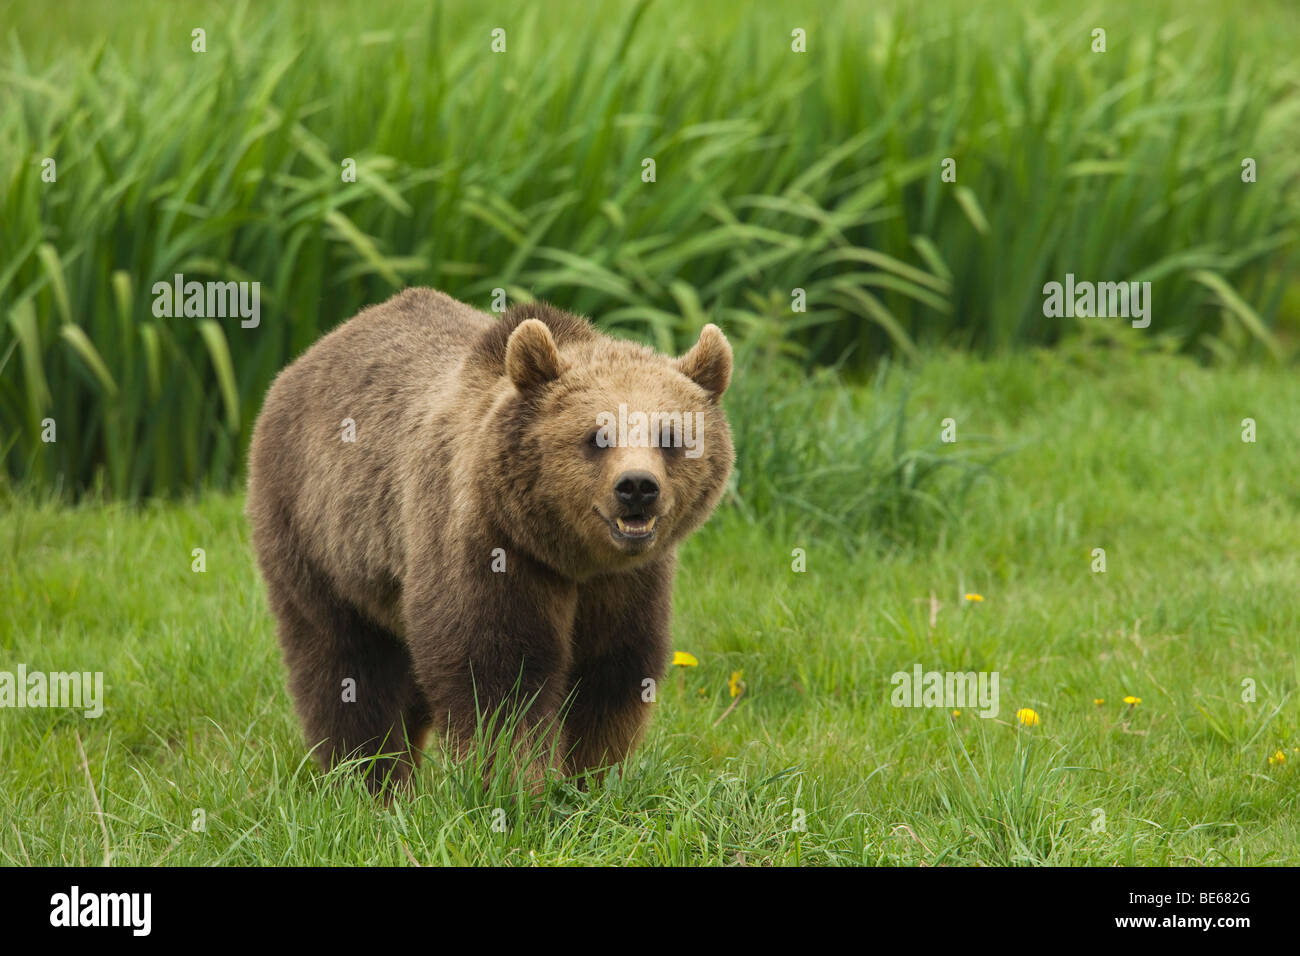 Unione l'orso bruno (Ursus arctos) camminando su un prato. Foto Stock